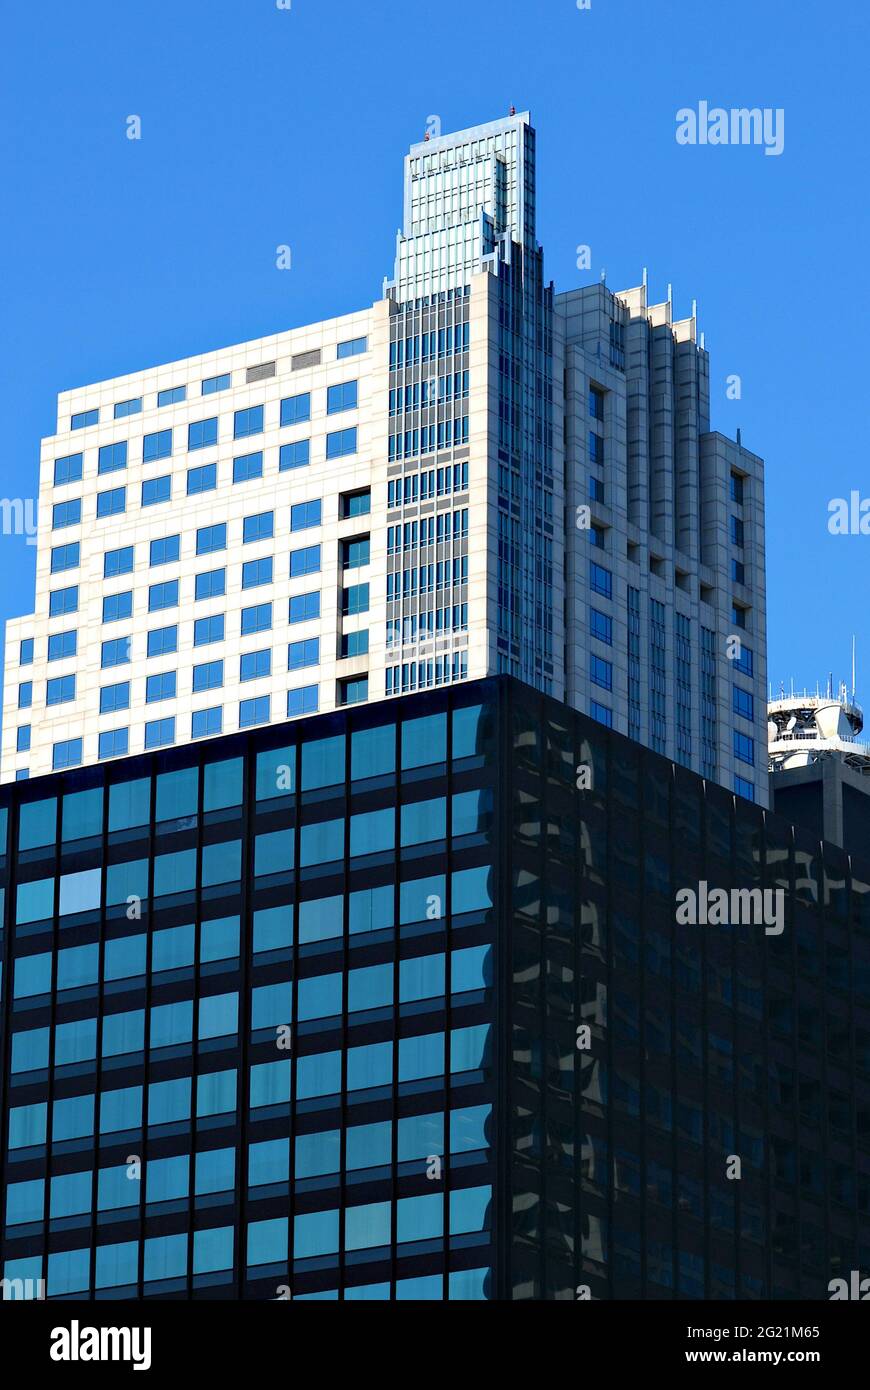 Un grattacielo nel centro di Chicago, Illinois, Stati Uniti, è bagnato dalla luce del sole contro un cielo blu chiaro in una fredda giornata invernale. Foto Stock